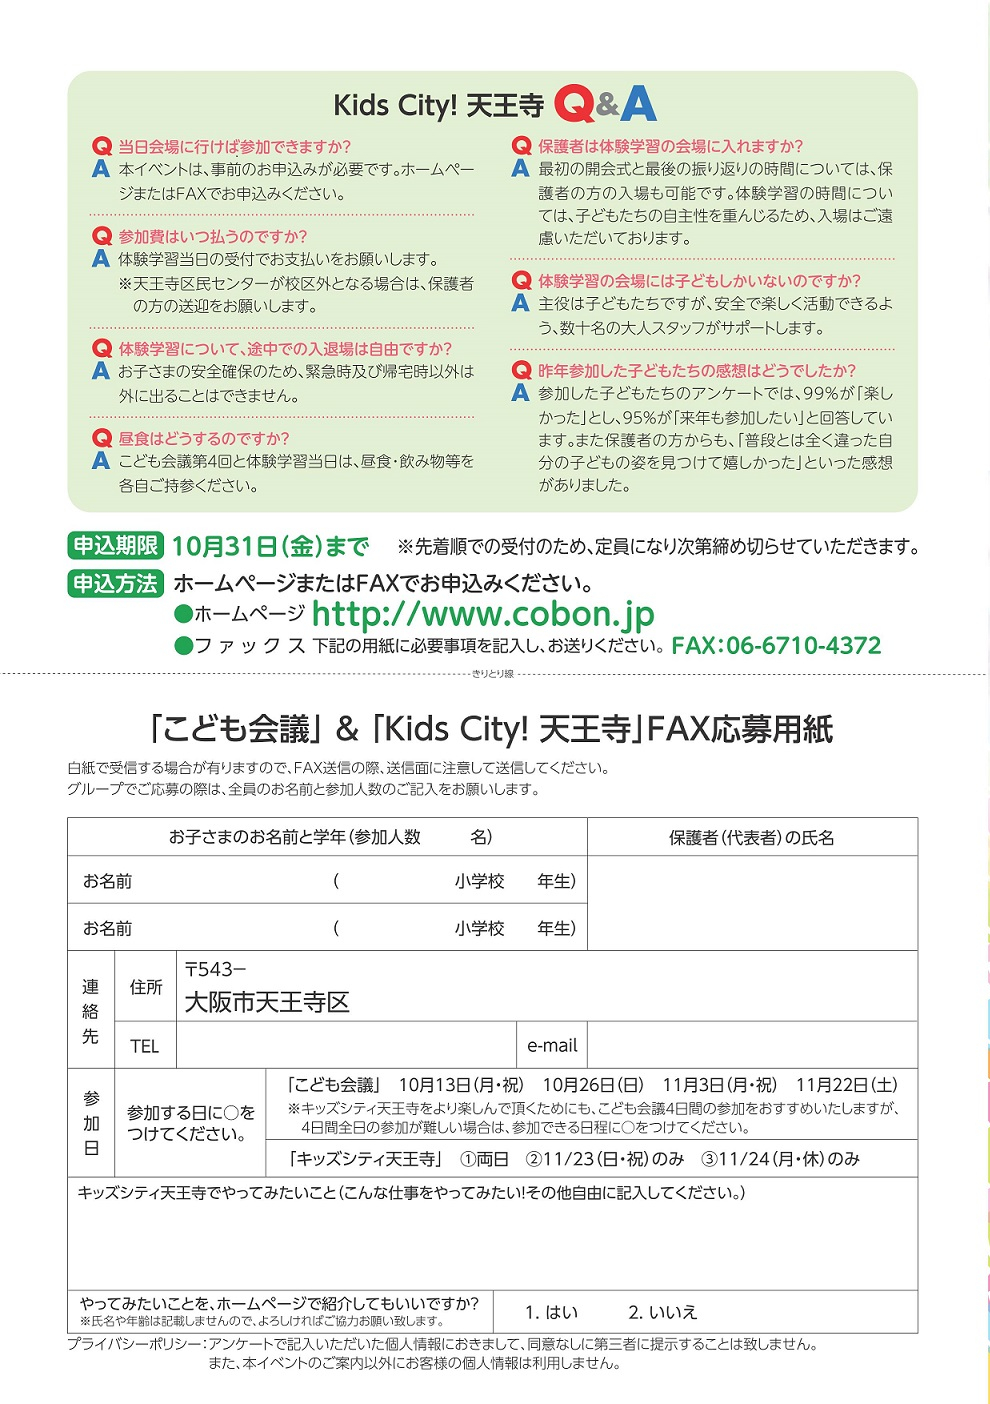 http://www.cobon.jp/news/2014/08/27/KidsCity_%E8%A3%8F.jpg